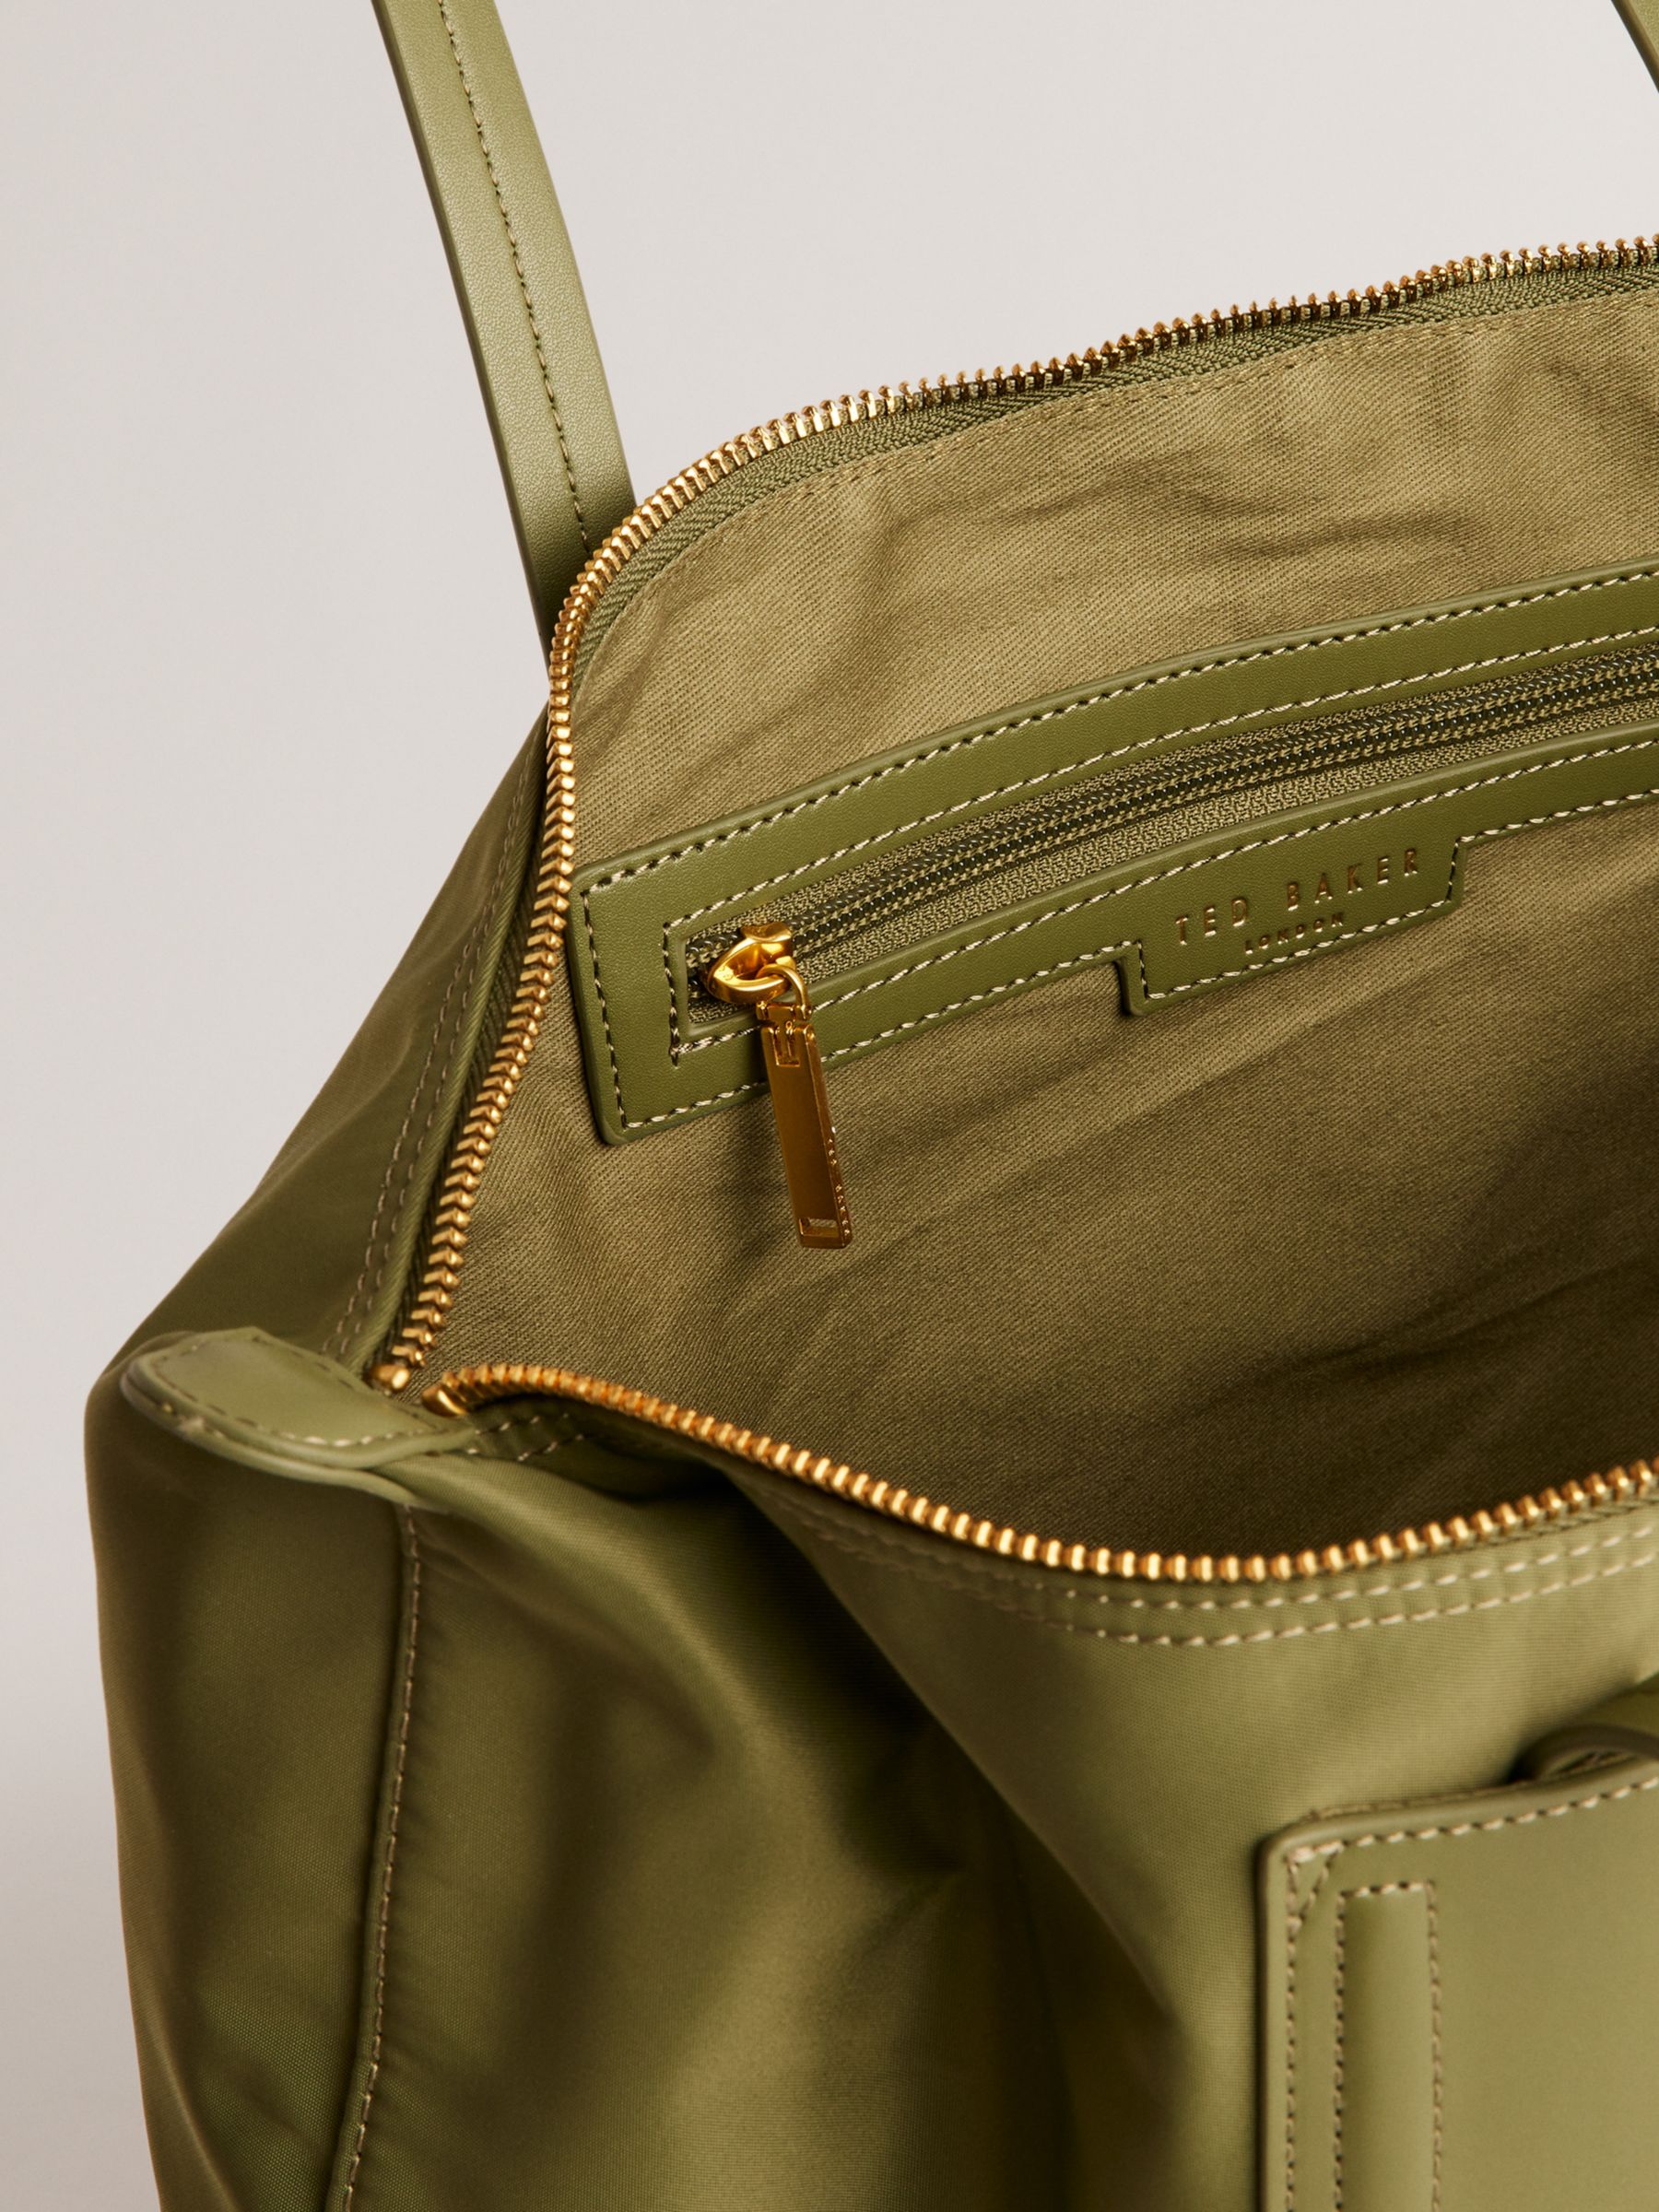 Ted Baker Voyaage Zip Top Tote Bag, Dark Green, One Size